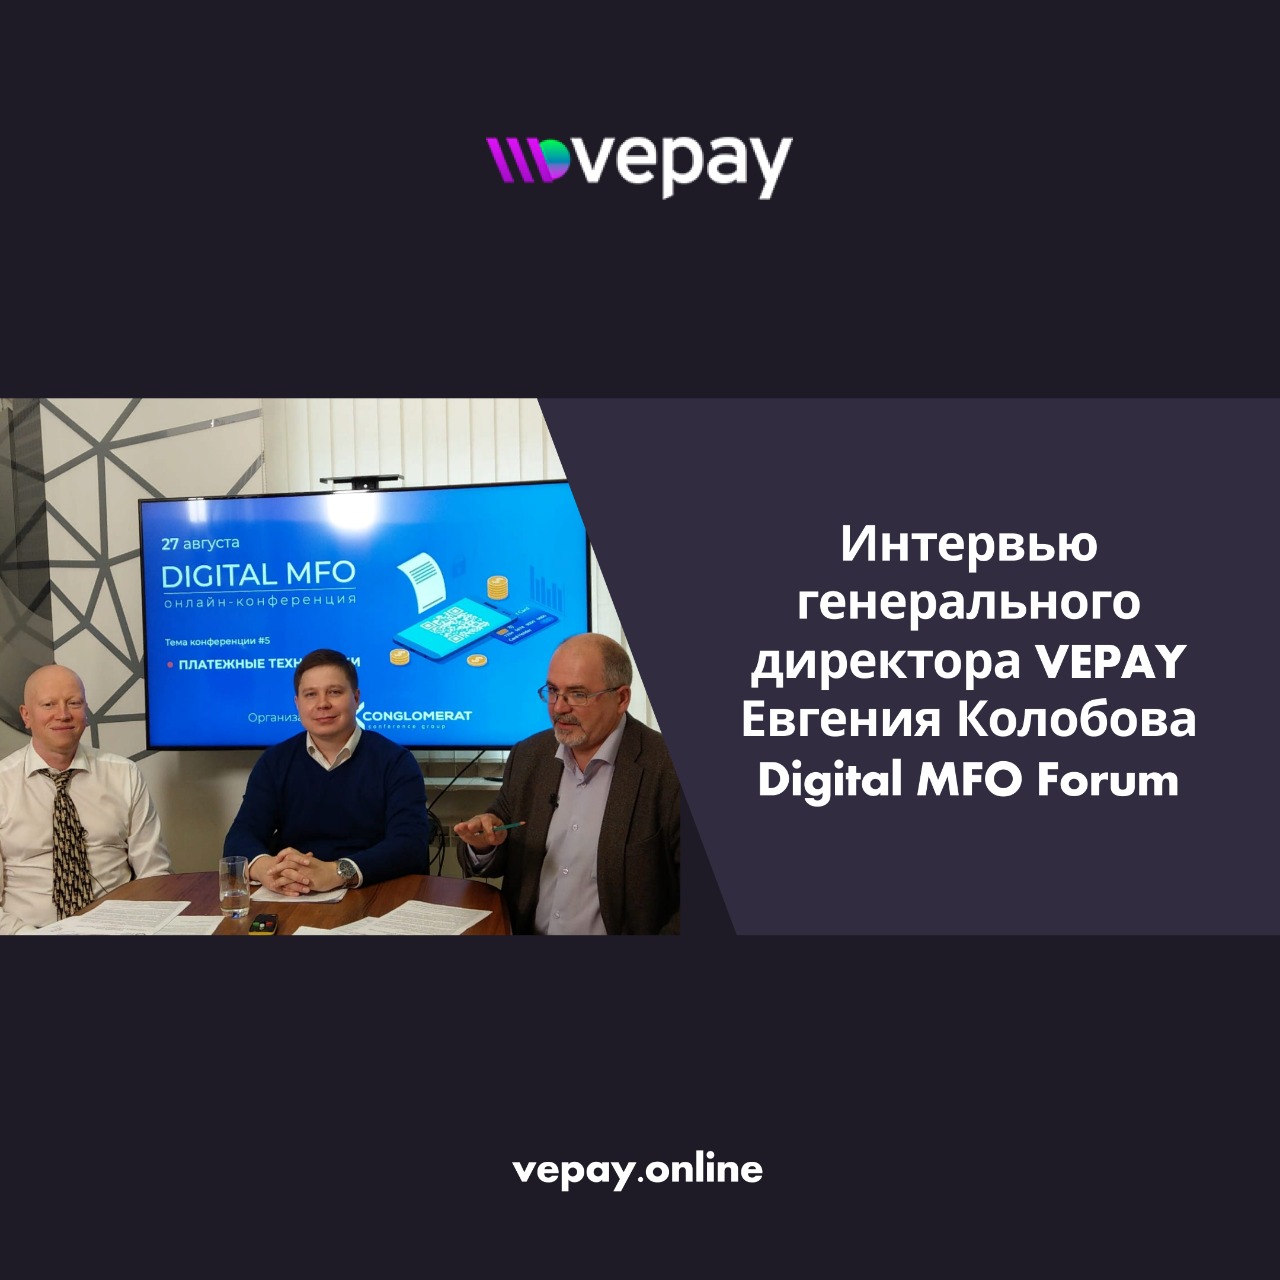 VEPAY — Интервью генерального директора VEPAY Евгения Колобова Digital MFO Forum